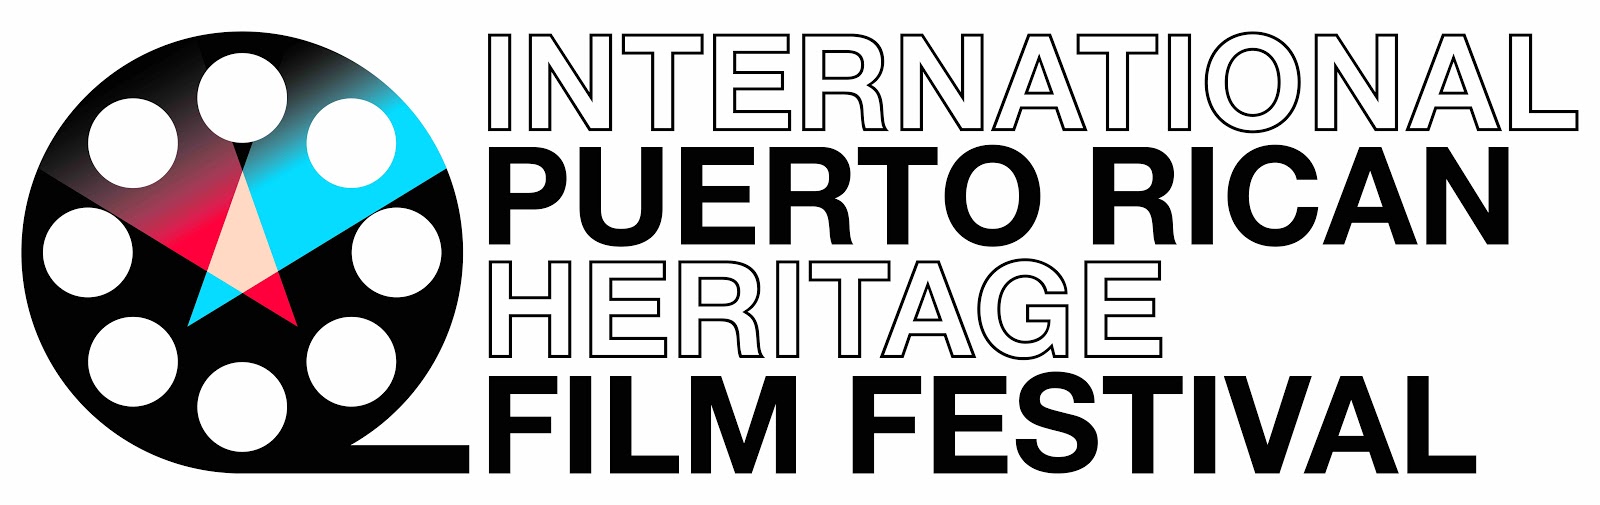 International Puerto Rican Heritage Film Festival escrito em letras pretas e em negrito ao lado de um gráfico de rolo de filme.